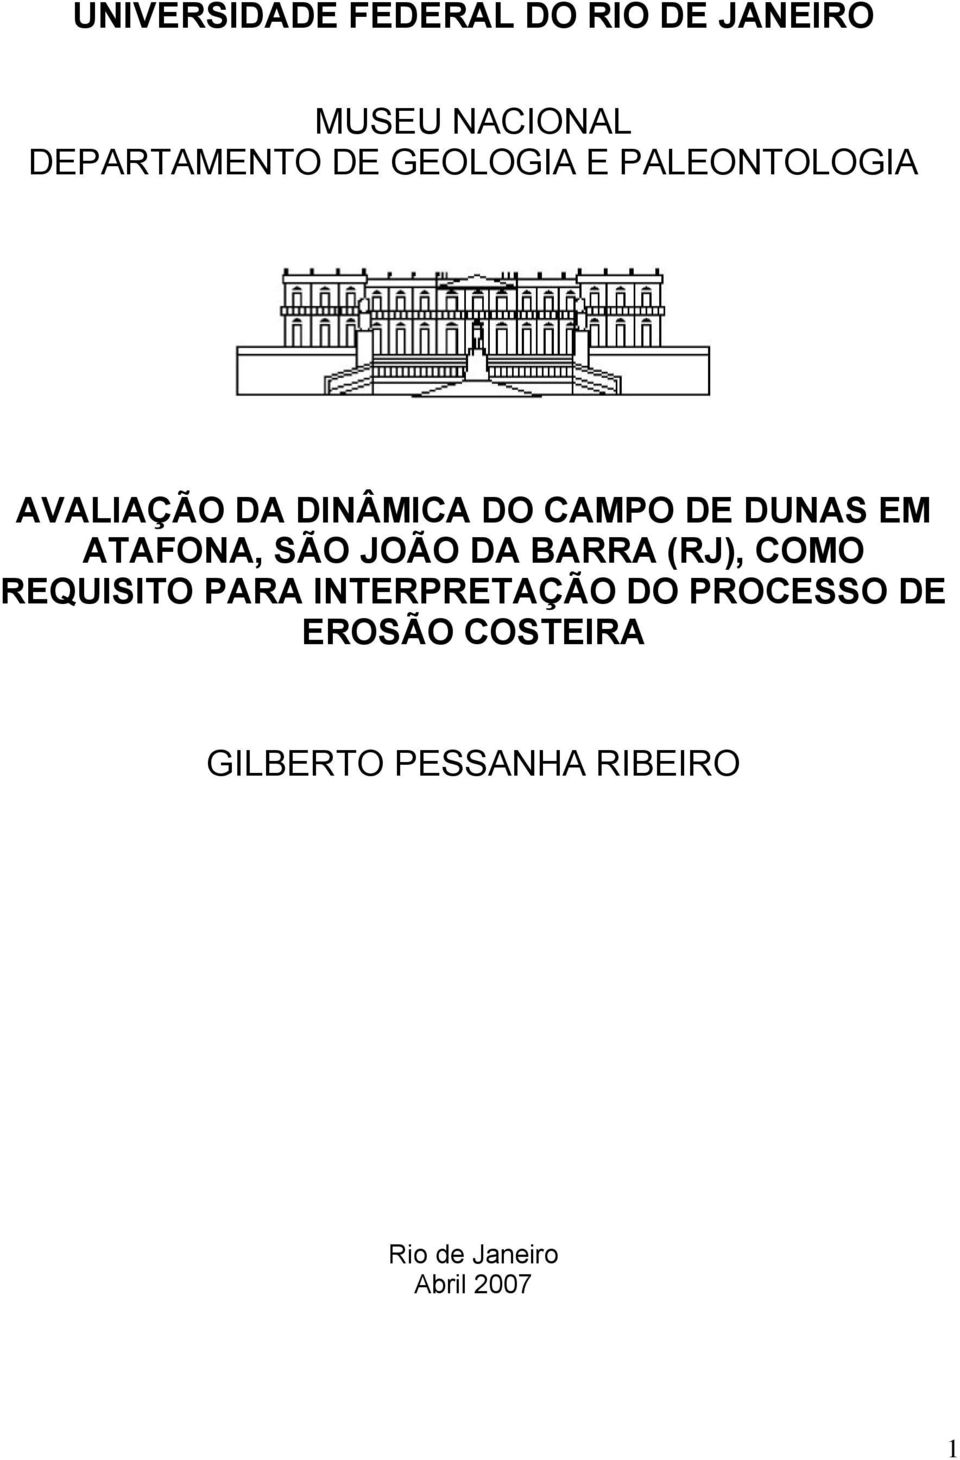 ATAFONA, SÃO JOÃO DA BARRA (RJ), COMO REQUISITO PARA INTERPRETAÇÃO DO